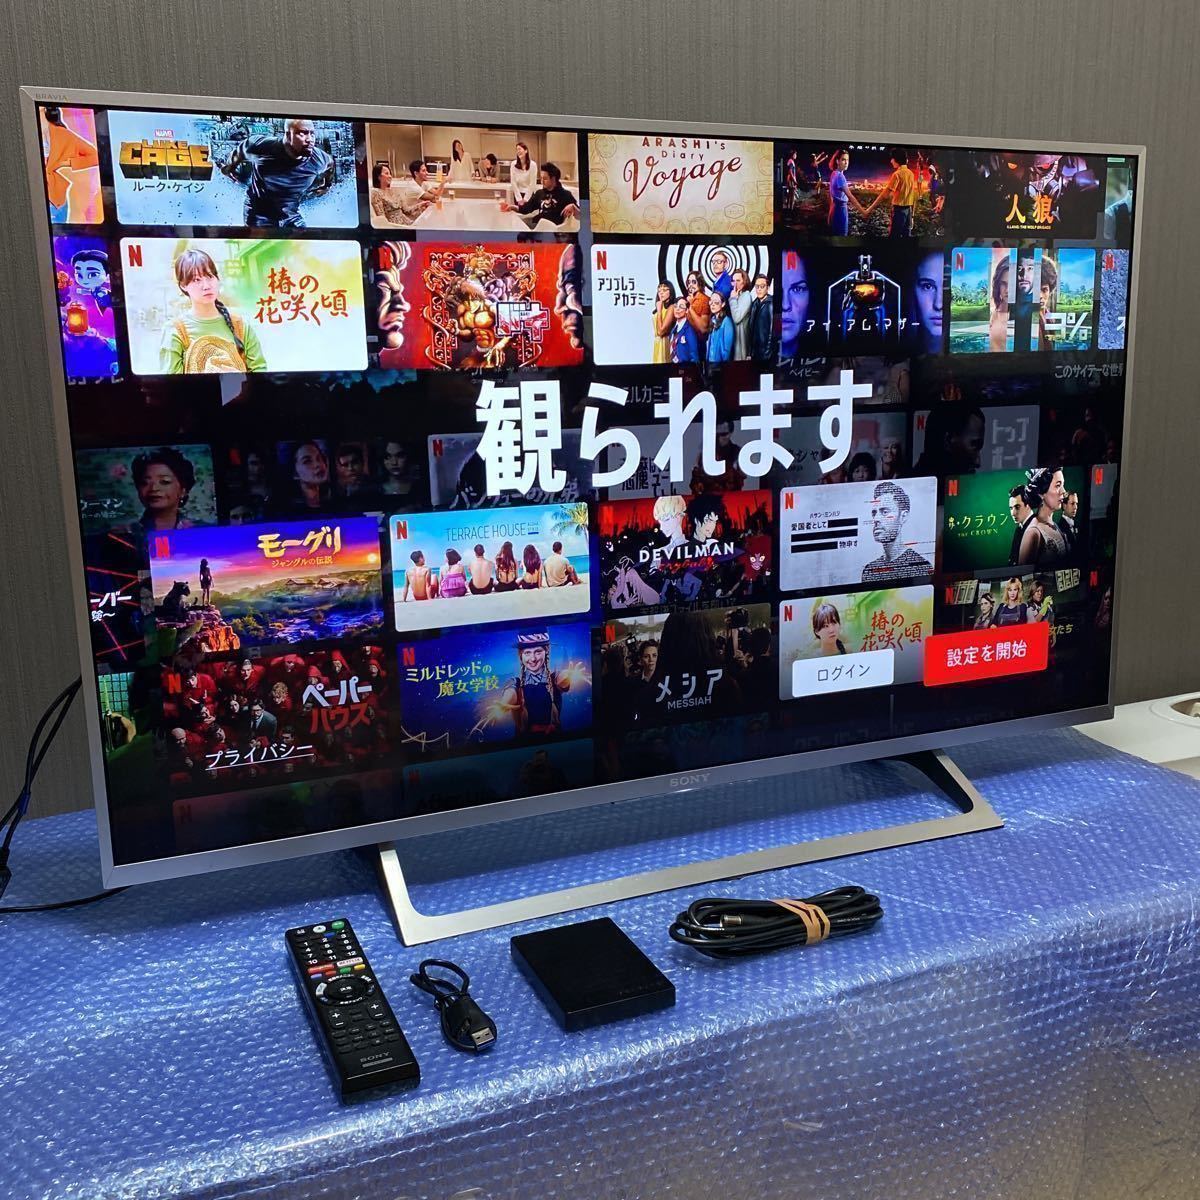 【セール】 SONY JK-43X8000E 2017年製 43インチ テレビ